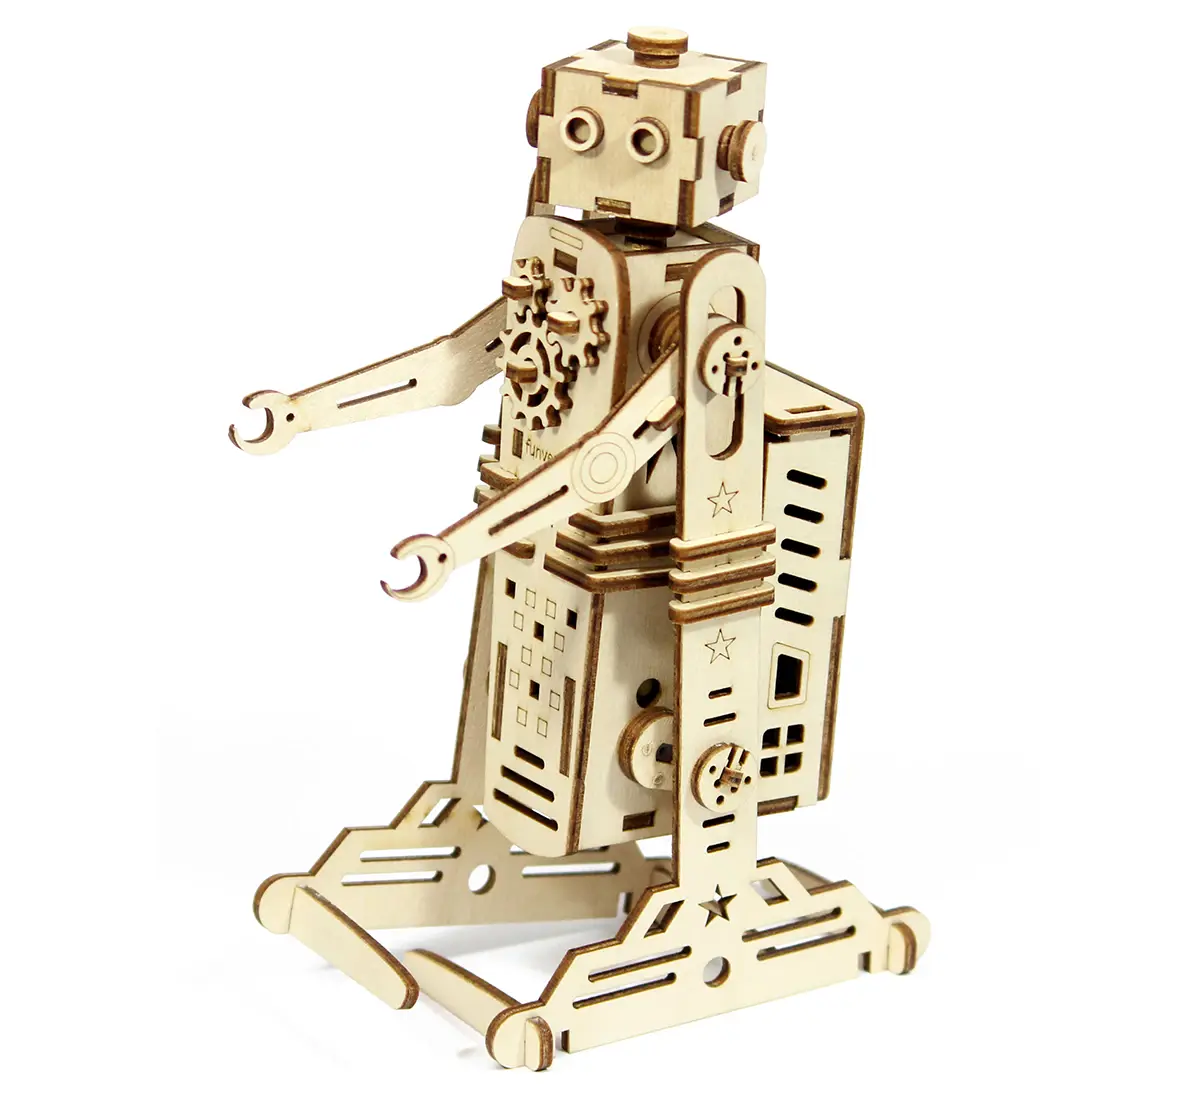 Funvention I-Robot - Diy Walking Robotic Model (Prime Series) Stem for Kids Age 8Y+